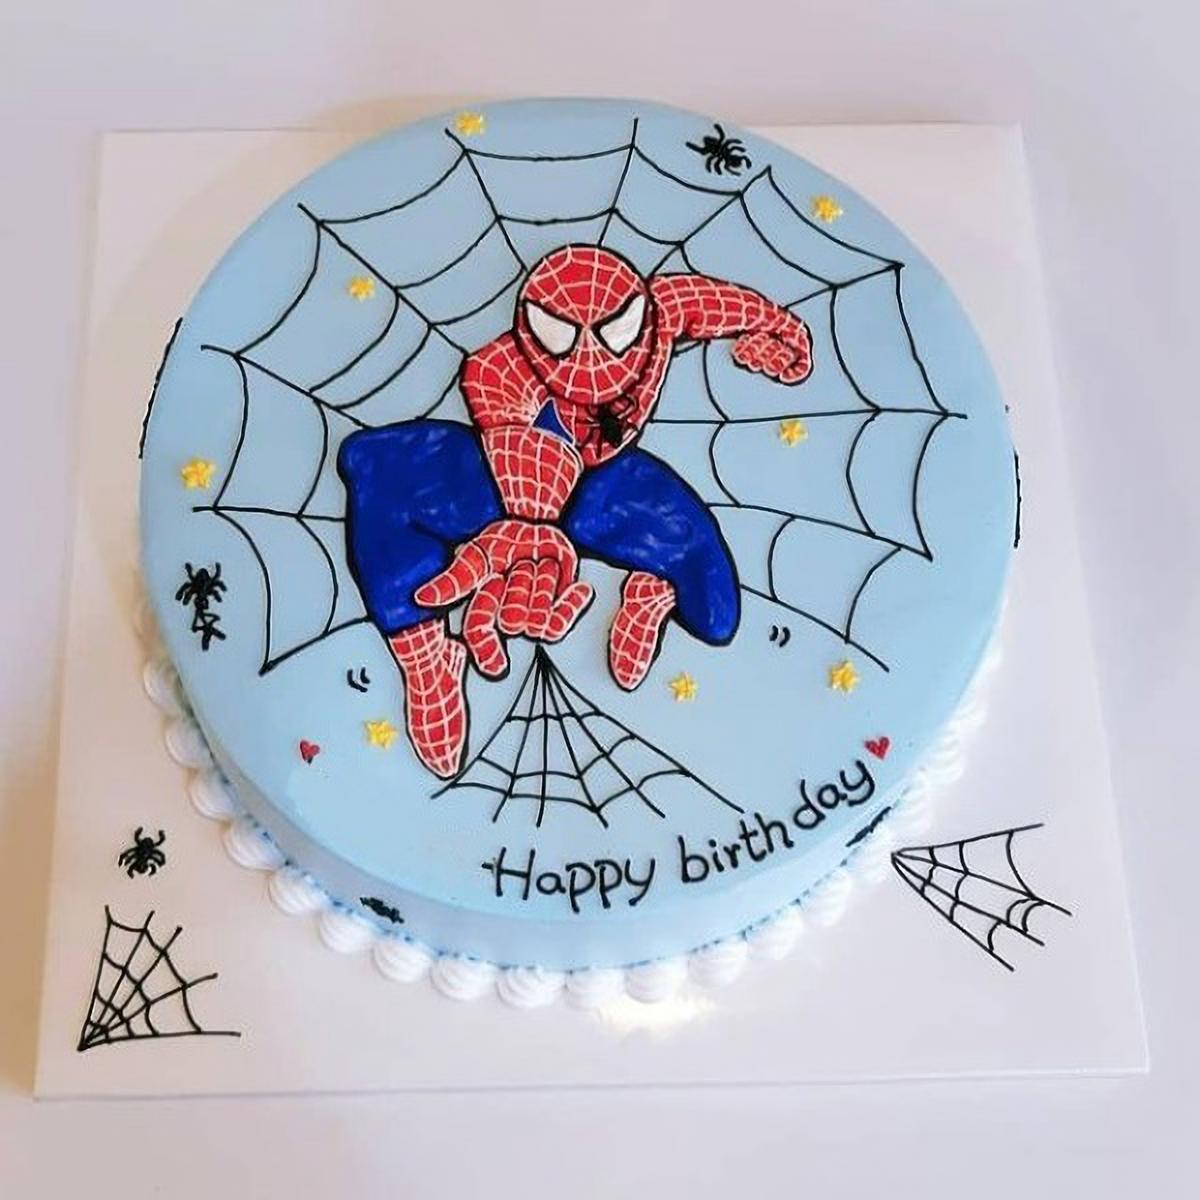 Bánh kem người nhện món quà cực đỉnh cho sinh nhật bé trai